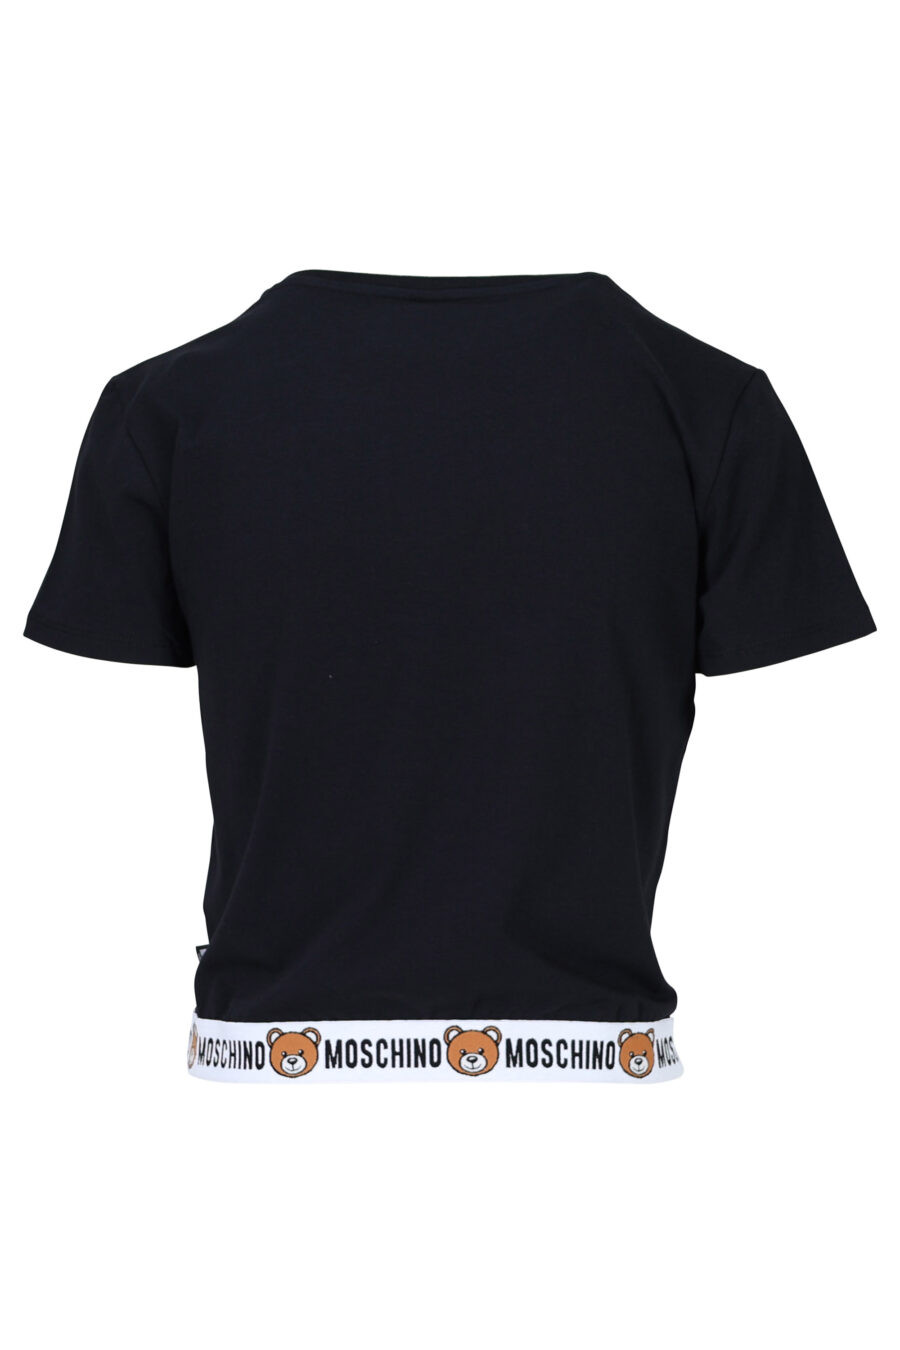 Schwarzes T-Shirt mit Bärenlogo "underbear" auf Band - 667113034157 1